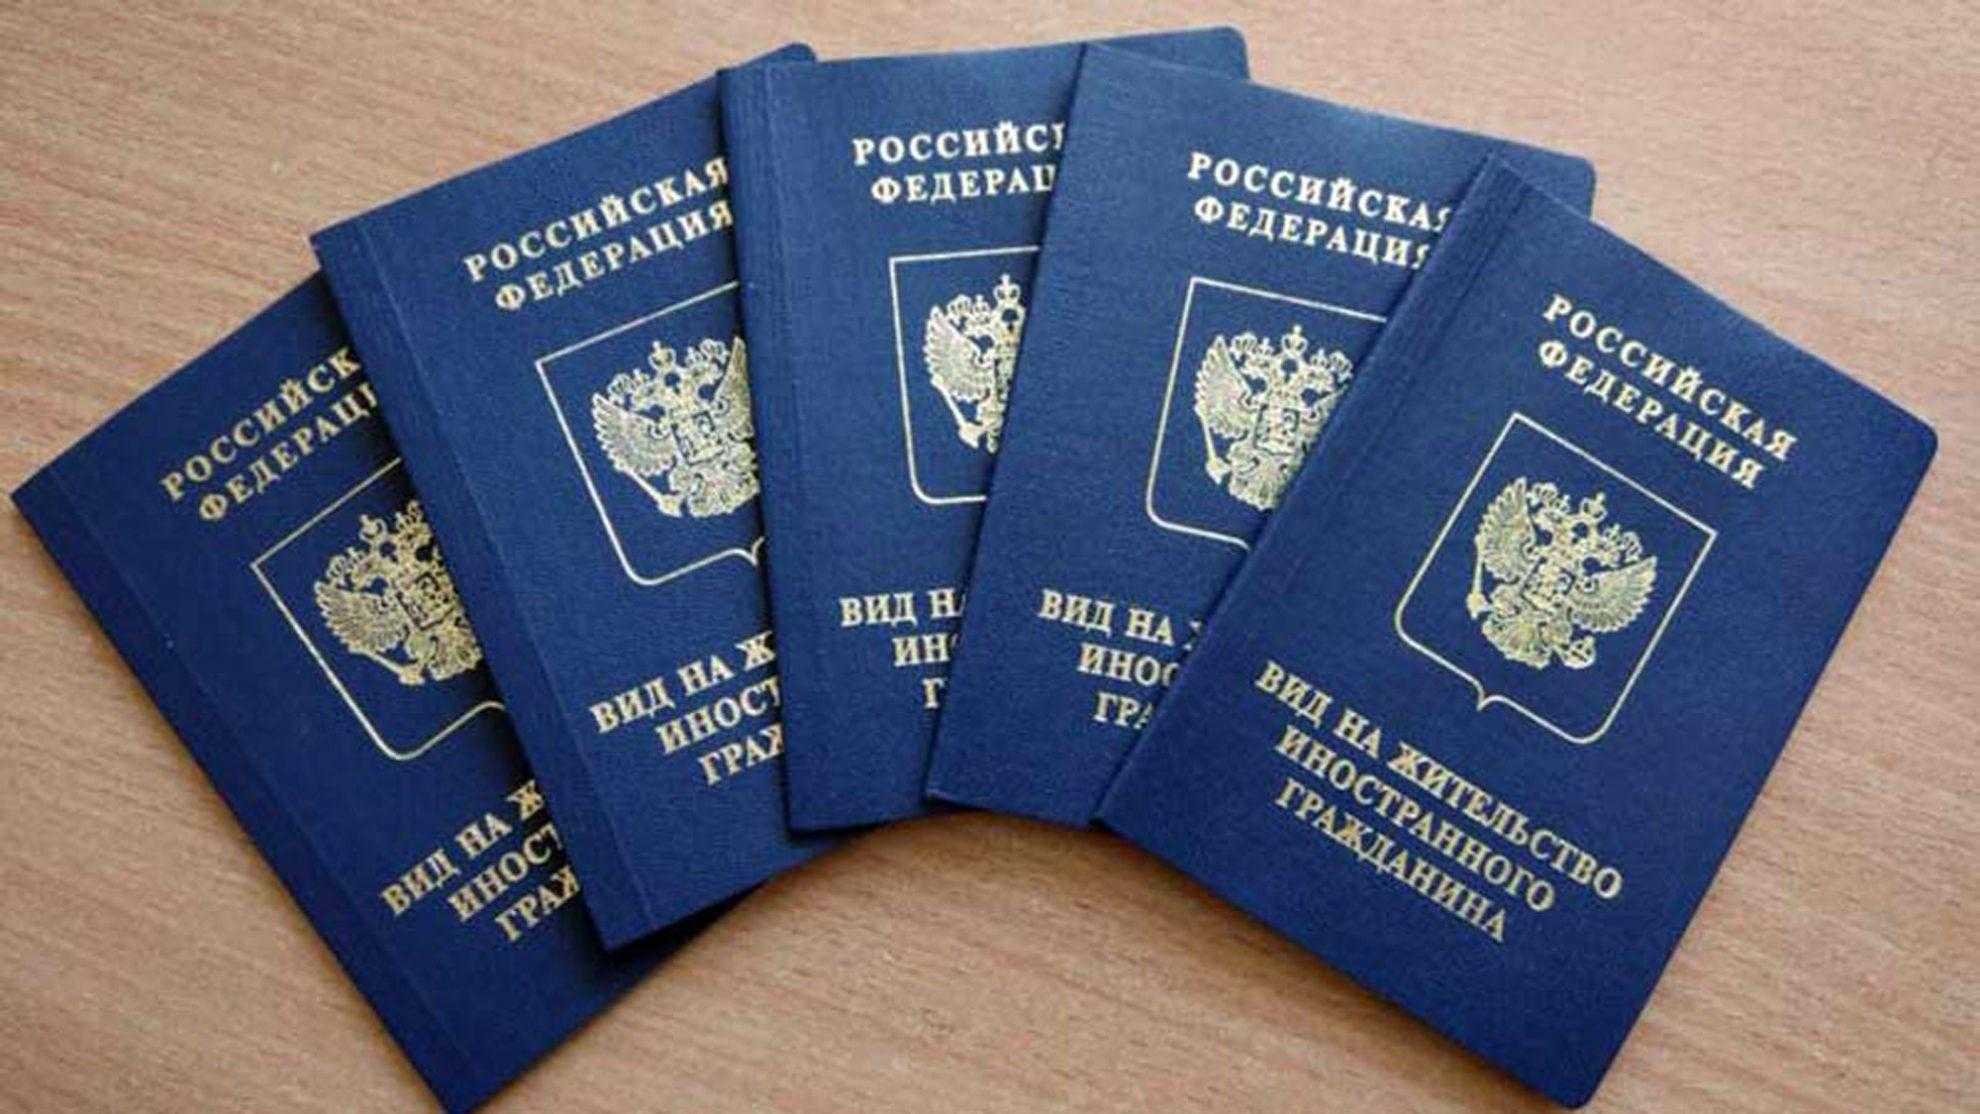 Работа в дании для россиян: как получить разрешение оформить визу принципы трудовой миграции разрешительные документы востребованные специальности